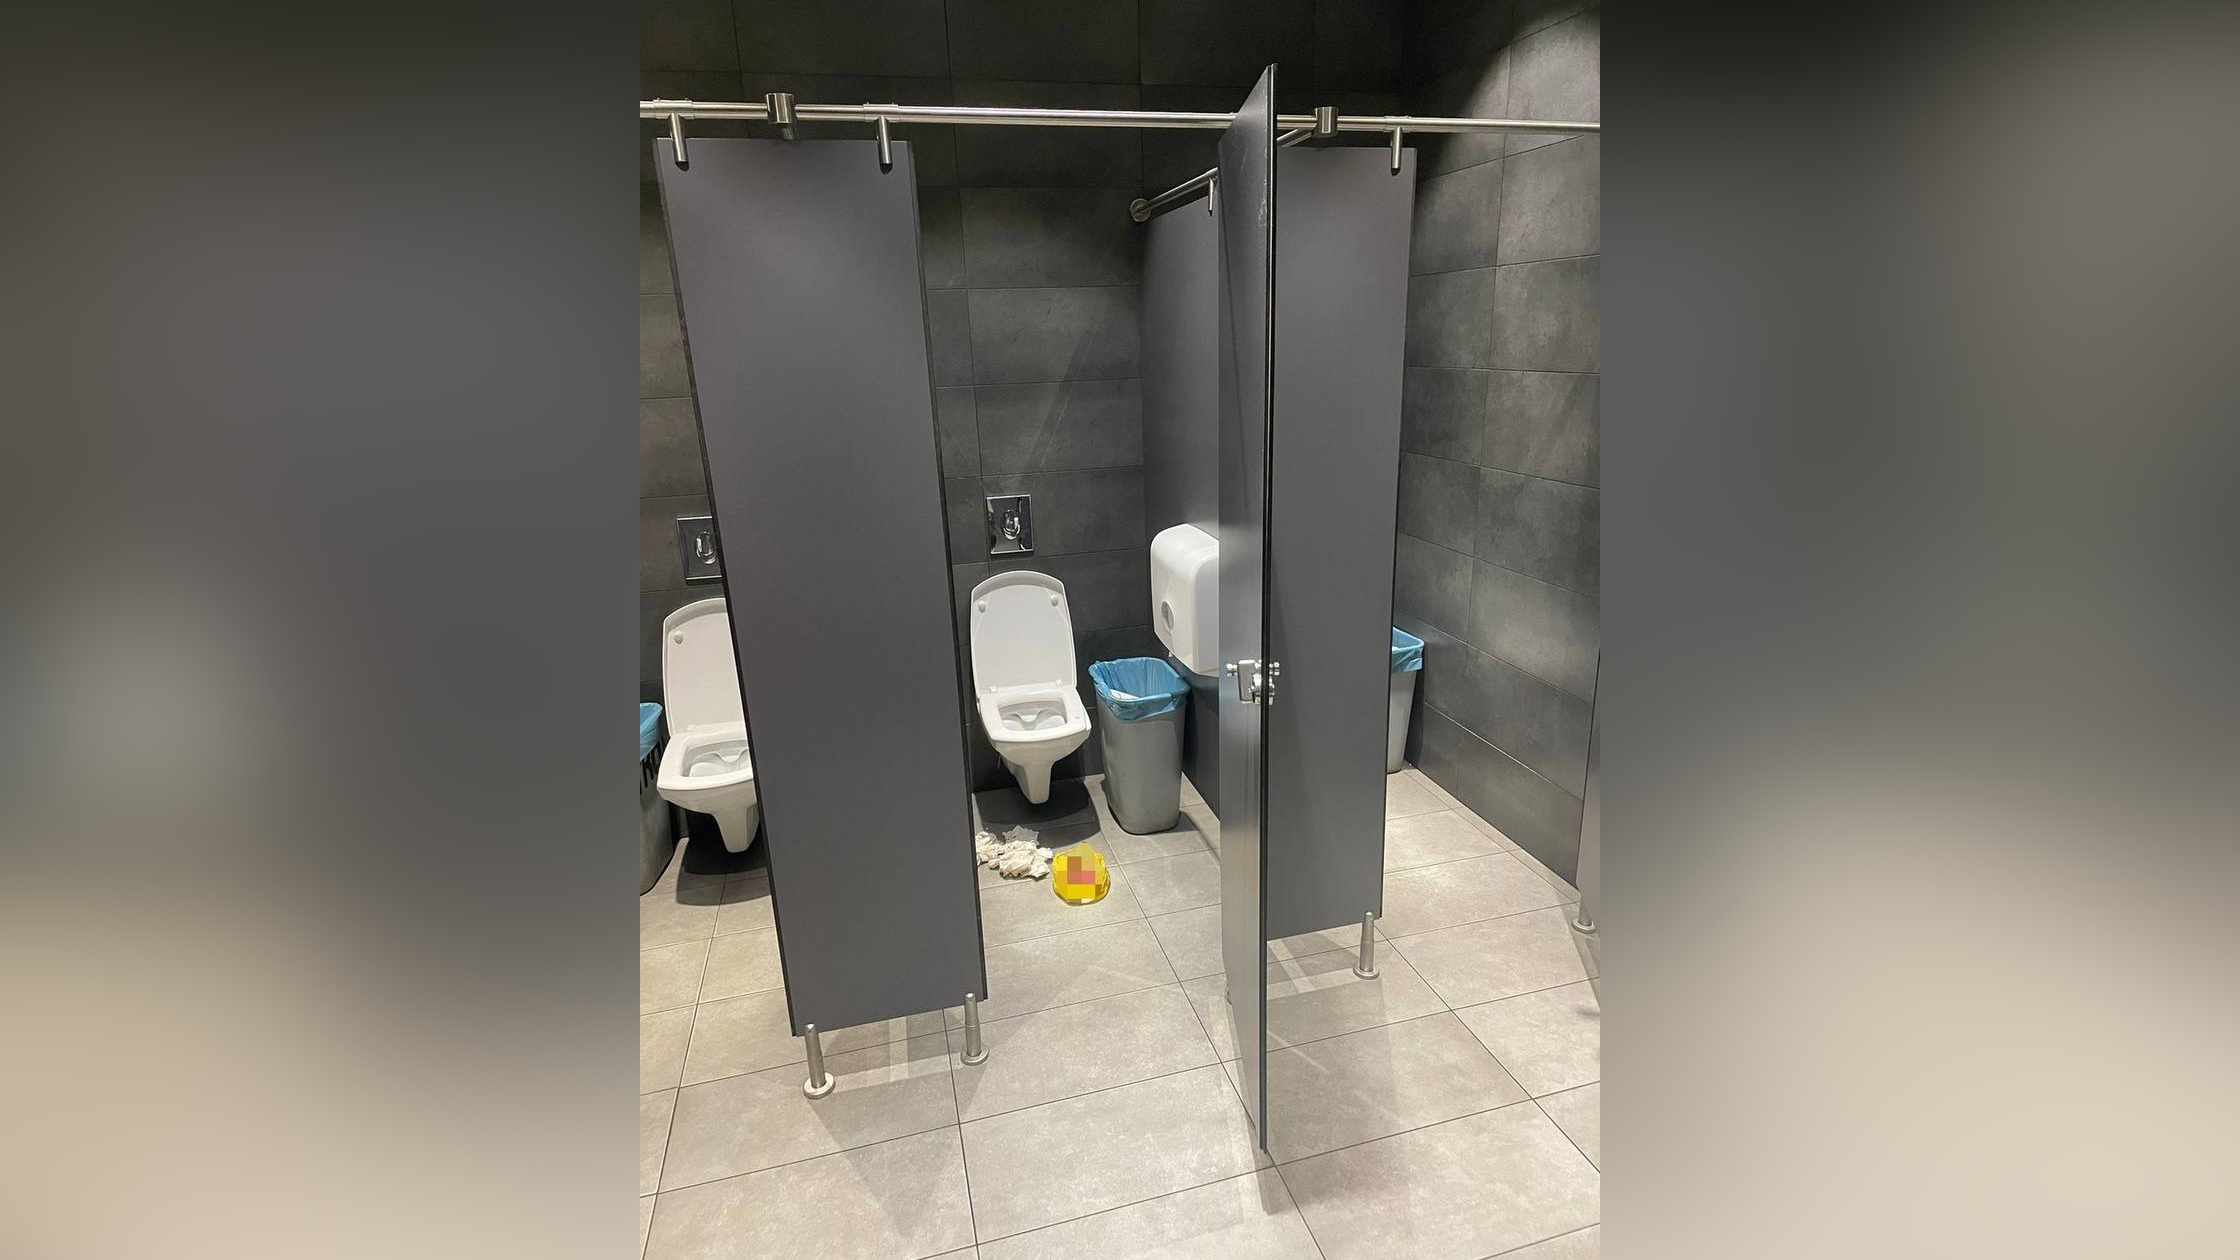 В туалете торгового центра Москвы найден труп недоношенного младенца